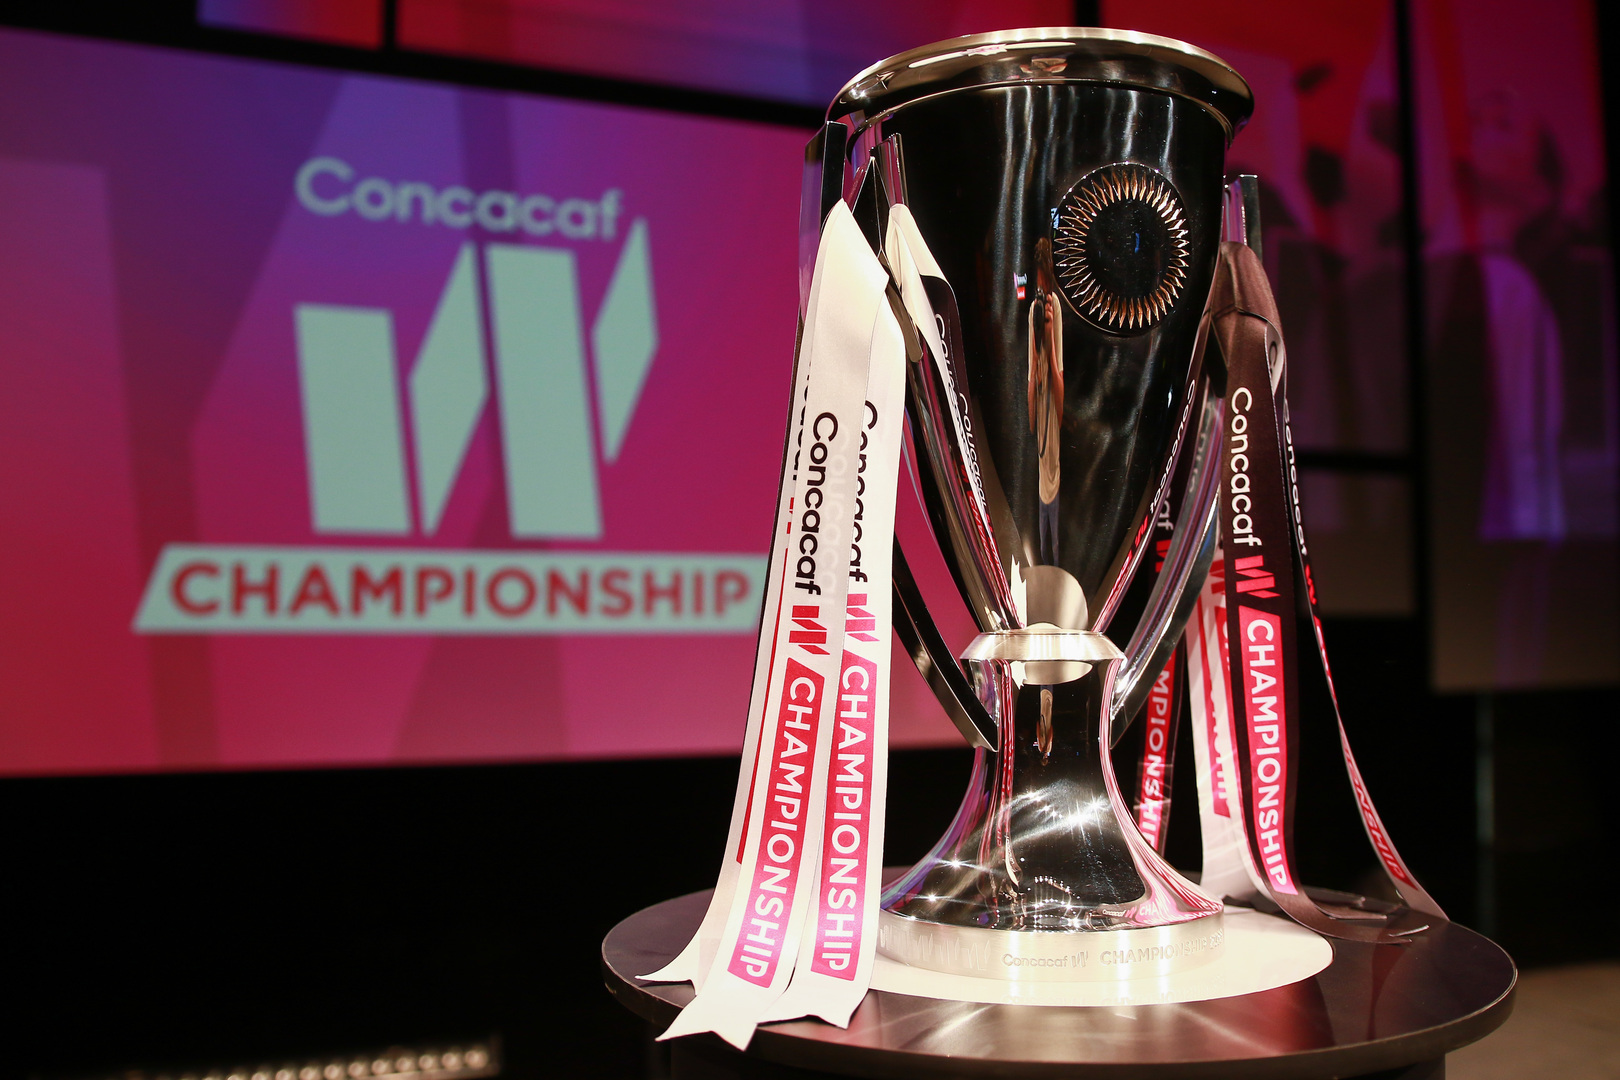 Concacaf anuncia calendario para la Clasificatoria Copa Oro W 2023